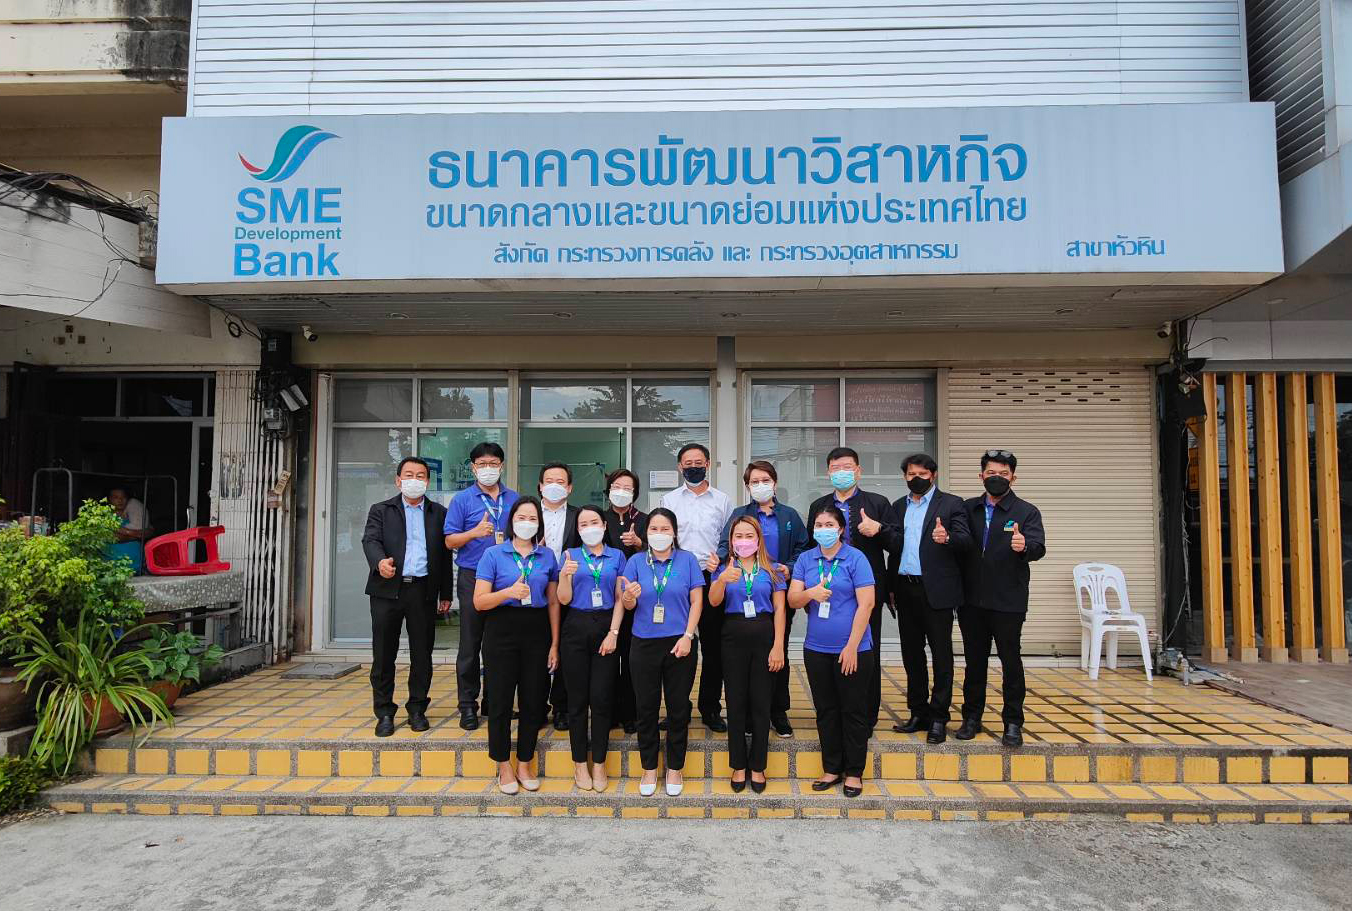 คณะกรรมการบริหาร SME D Bank ลงพื้นที่ จ.เพชรบุรี-ประจวบคีรีขันธ์ เยี่ยมชมกิจการลูกค้า พร้อมมอบนโยบายสาขาหนุน SMEs เข้าถึงแหล่งทุน